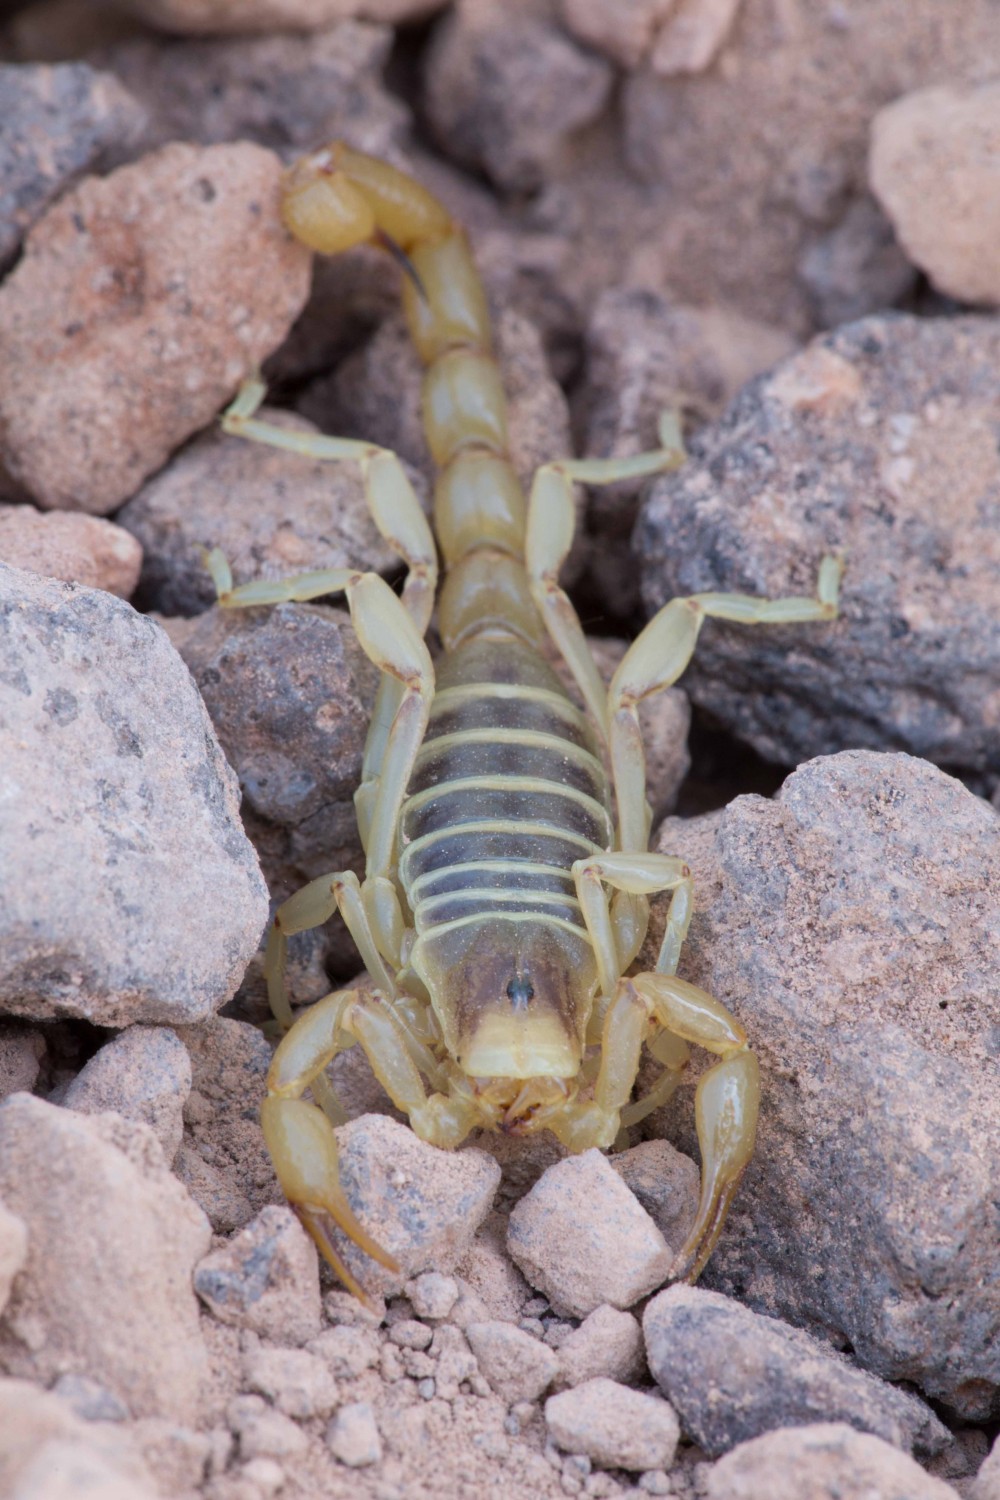 Un scorpion en el desierto absolute.